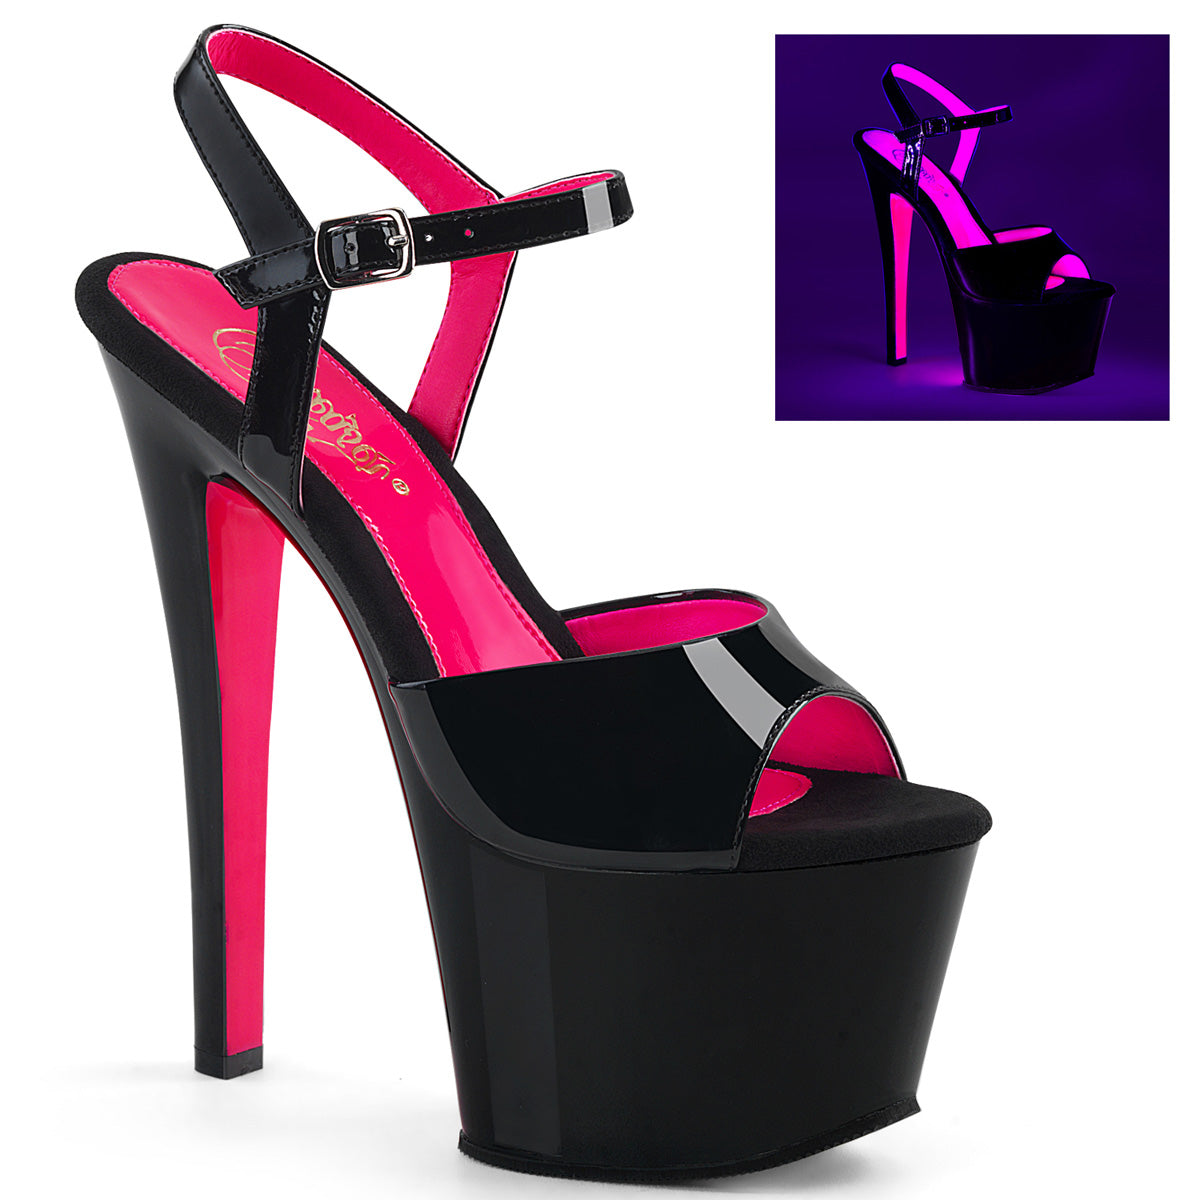 Sky-309TT 7 "каблука черный патент горячий розовый столб танцора обувь